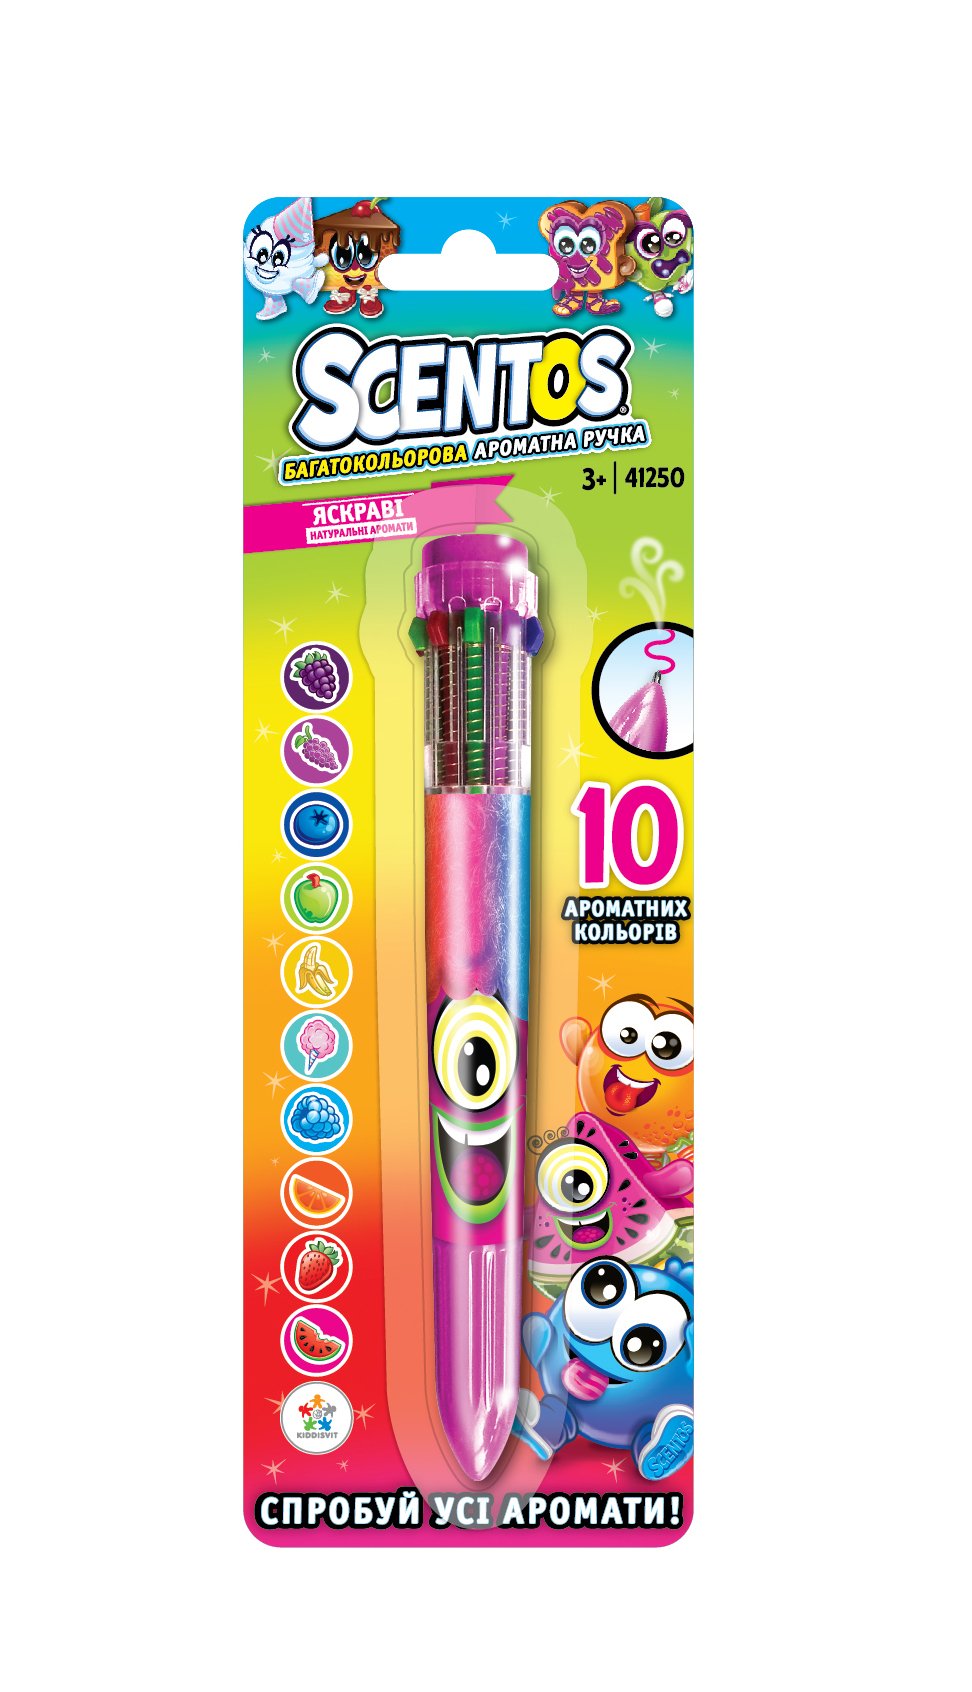 Многоцветная ароматная шариковая ручка Scentos Волшебное настроение, 10 цветов, розовый (41250) - фото 1